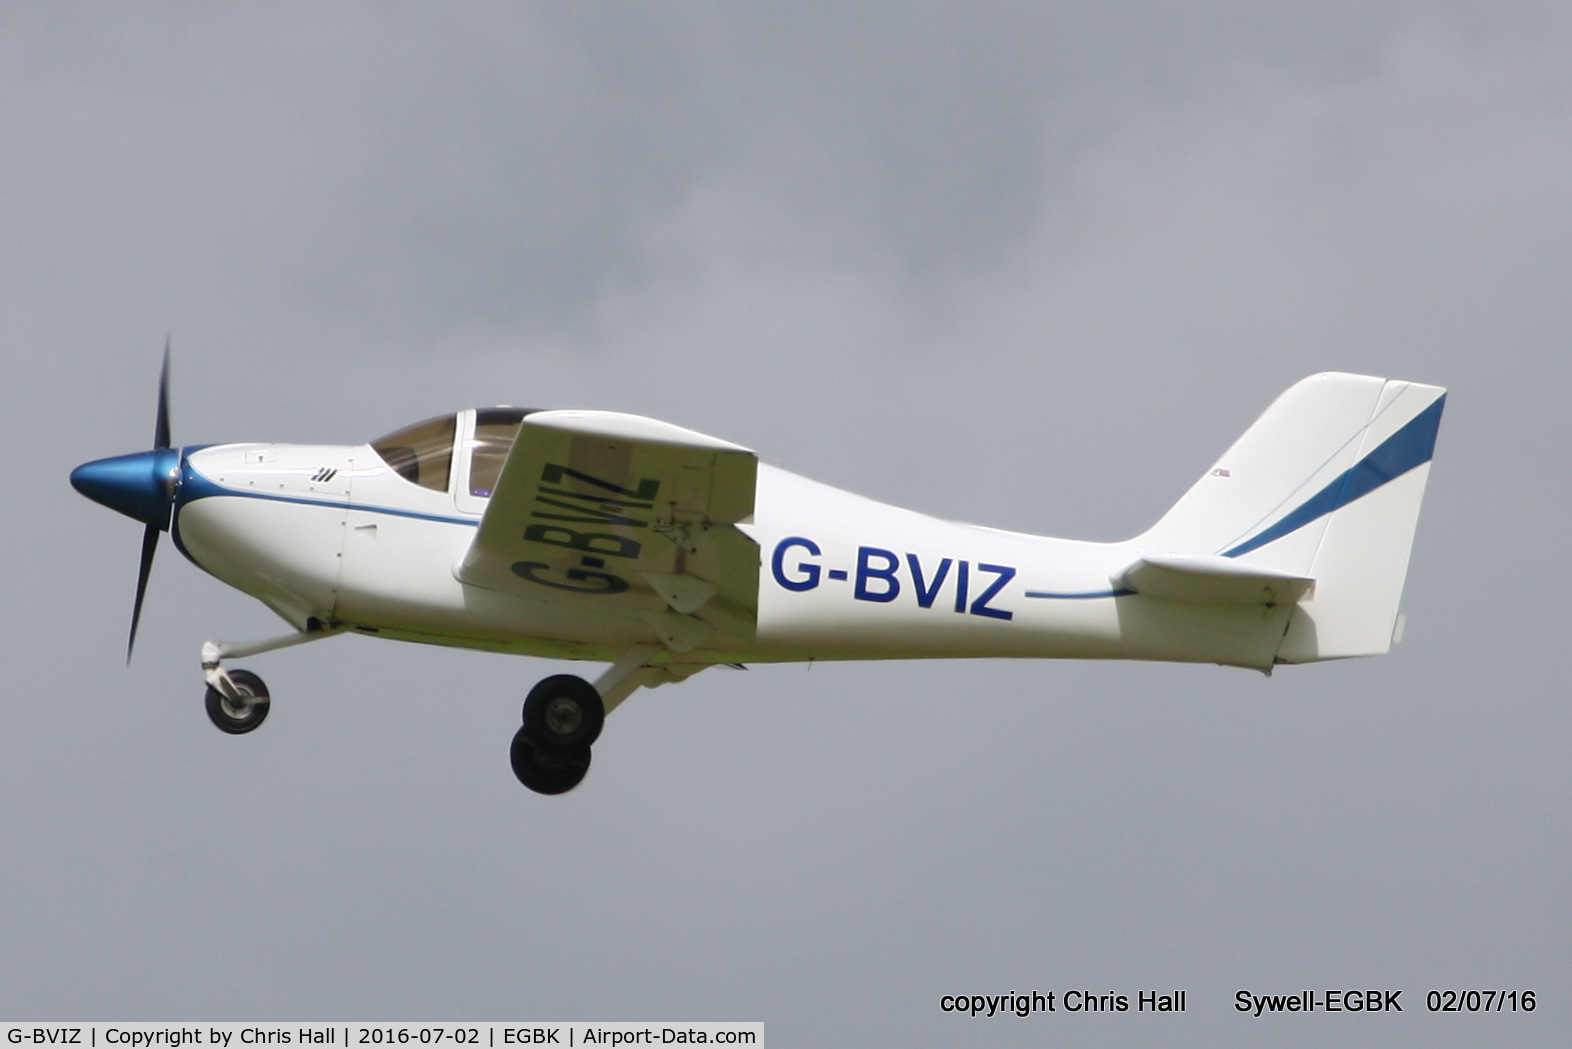 G-BVIZ, 1996 Europa Tri-Gear C/N PFA 247-12601, at Aeroexpo 2016